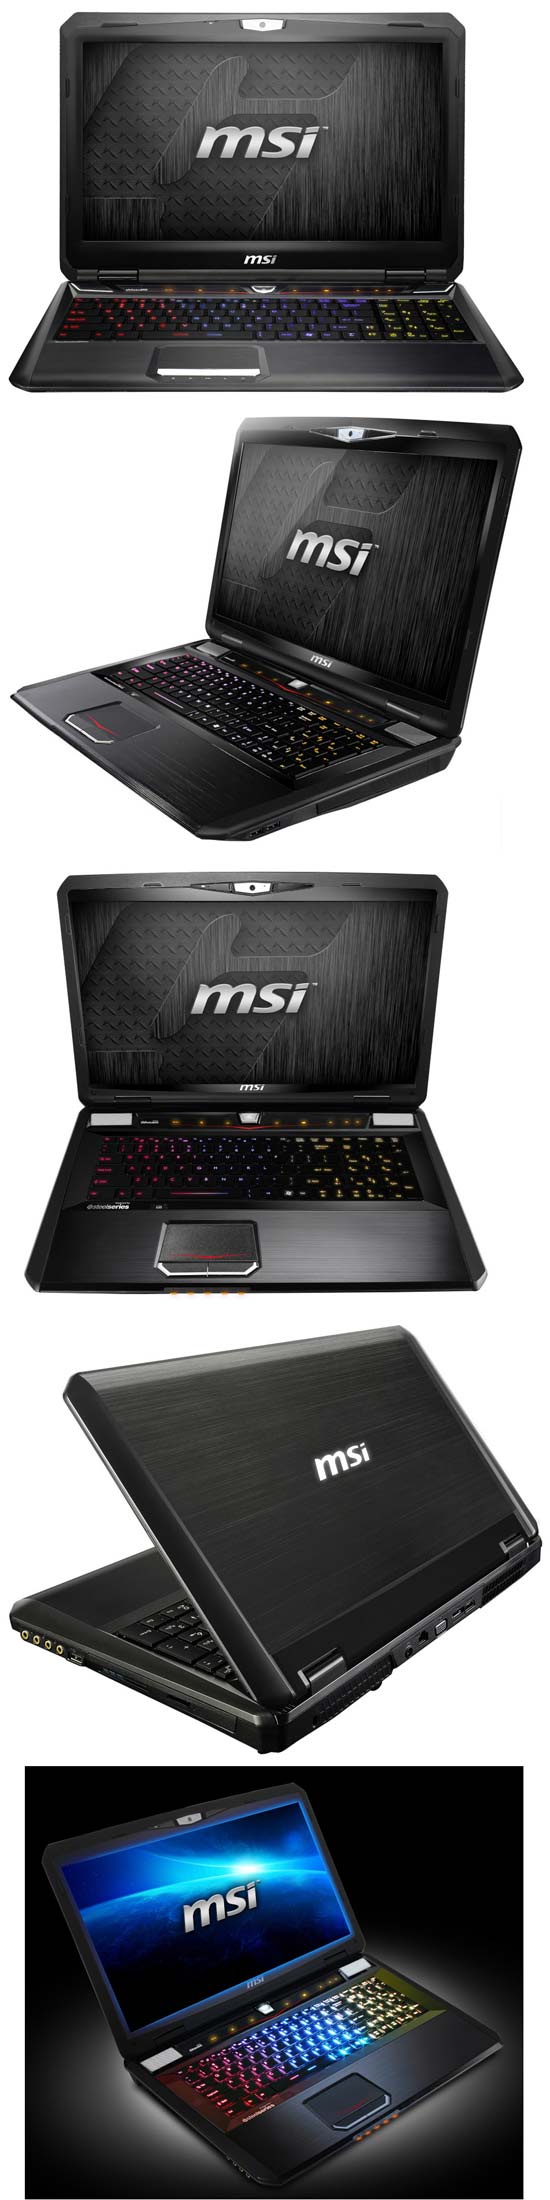 Ноутбуки MSI GT70 и GT60 обзаводятся новым видео